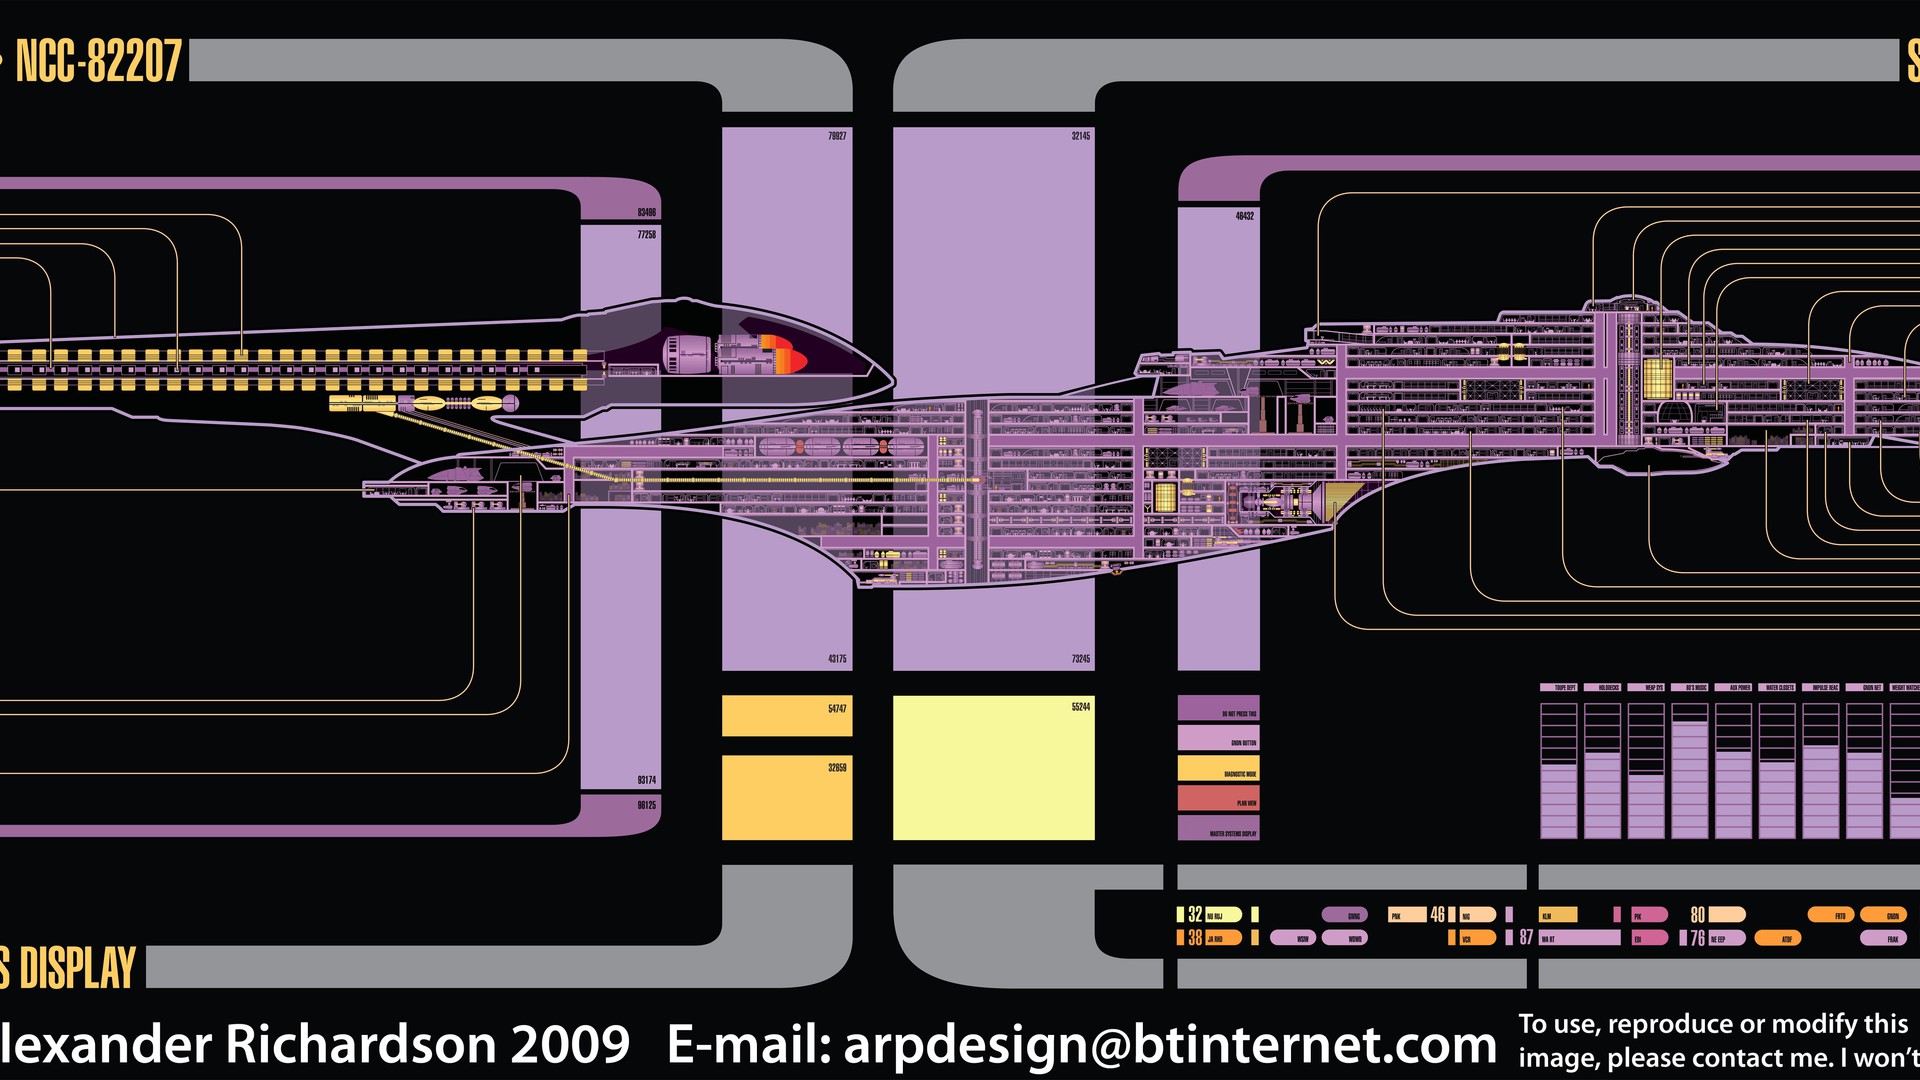 Star Trek Sovereign The Next Generation Voyager Schematics